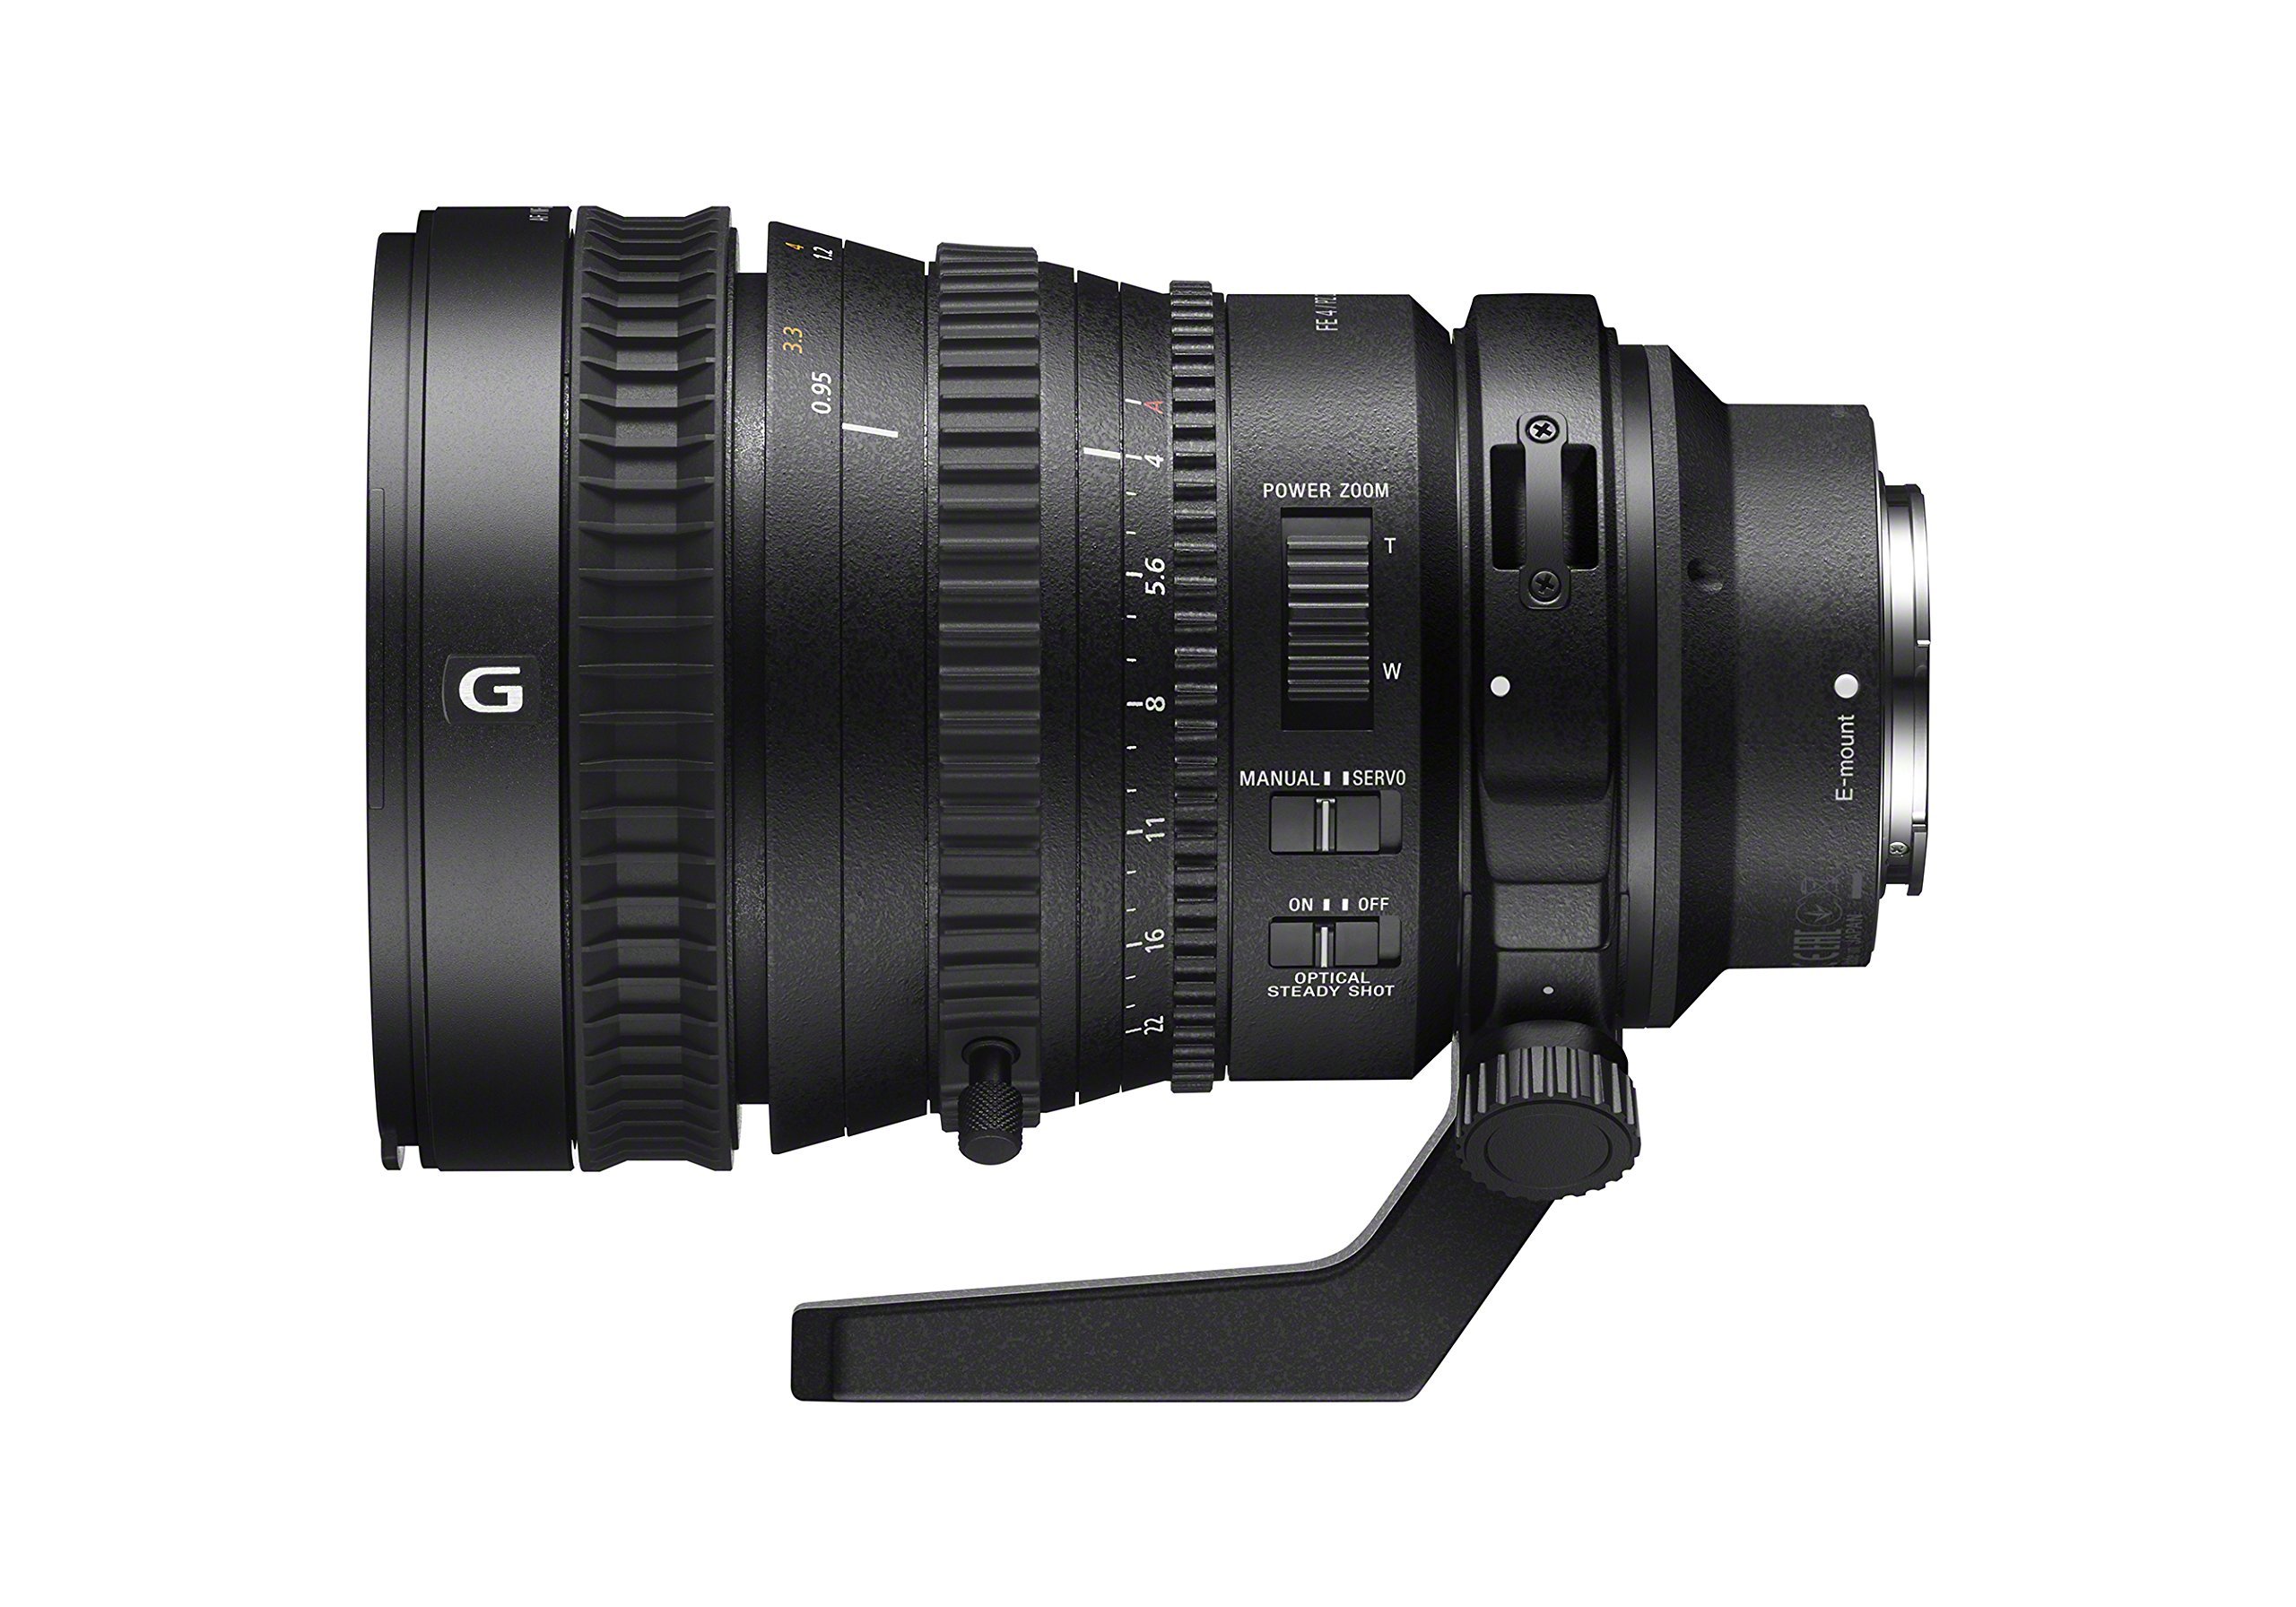 Sony 28-135mm FE PZ F4 G OSS Full-frame E-mount Power Zoom Lens (Renewed)